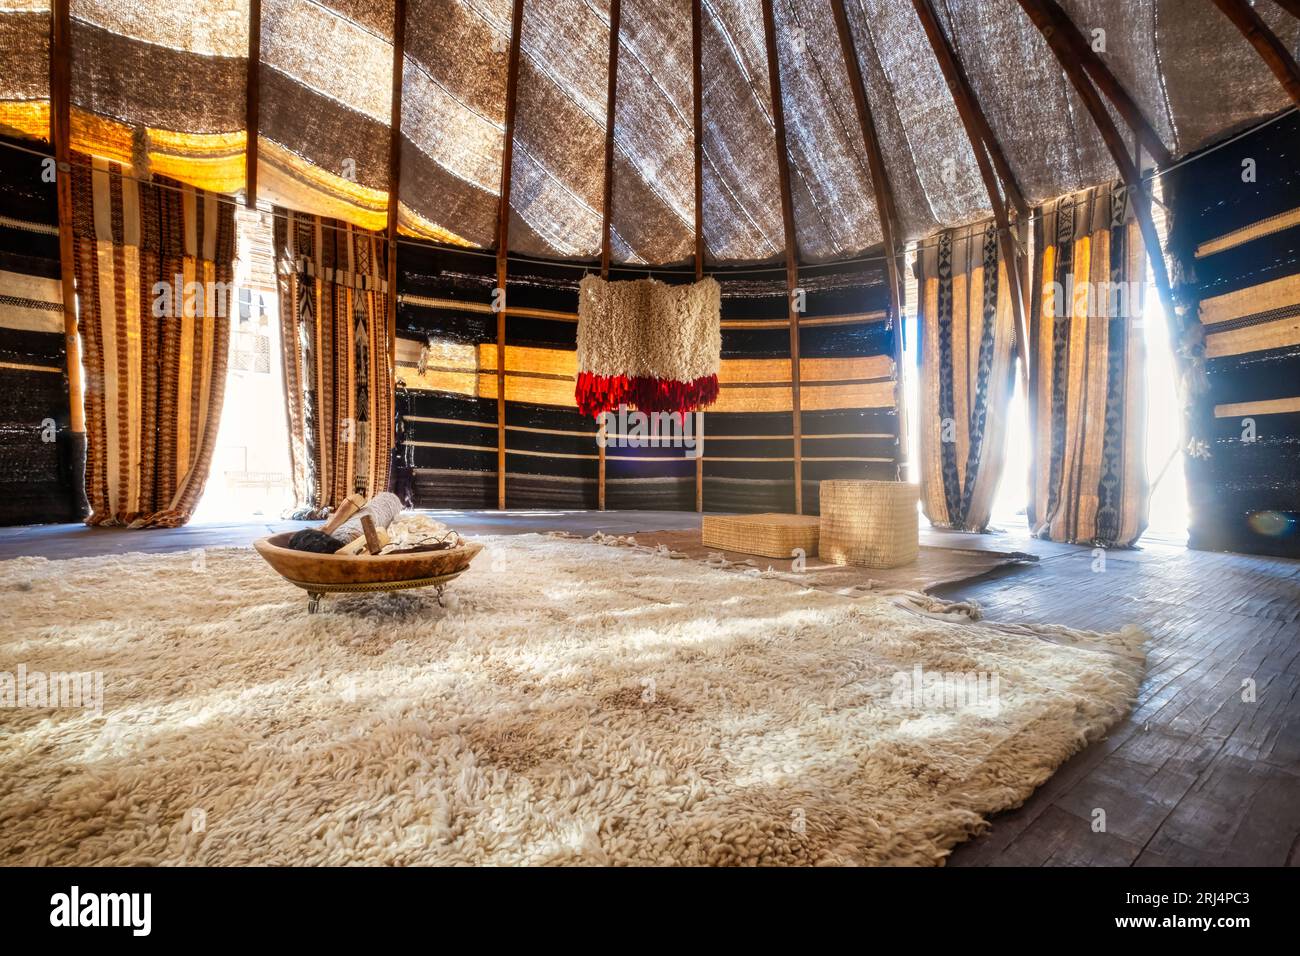 Le foto accattivanti mettono in risalto una tradizionale tenda del Qatar, nota come tenda "beduina". La sua struttura unica, sostenuta da pali di legno e adornata con dentro Foto Stock